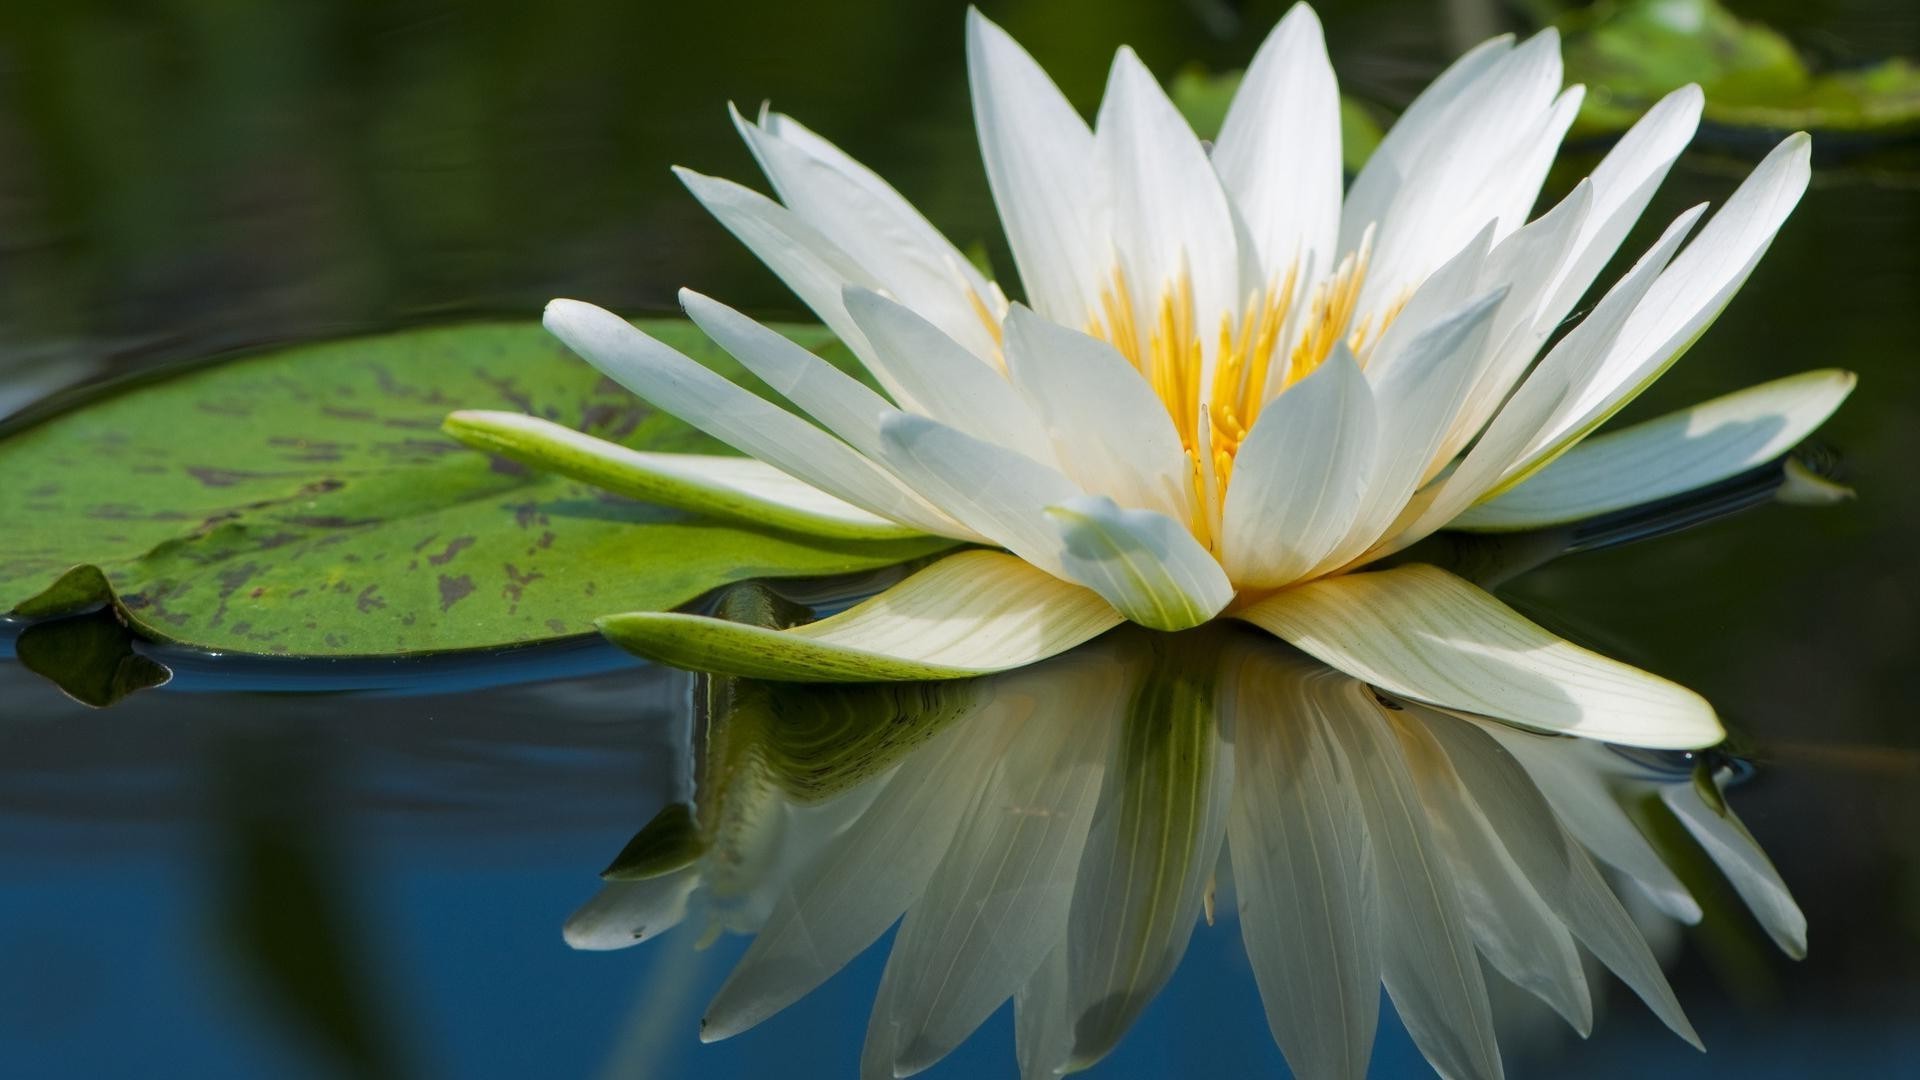 цветы в воде цветок природа лотос флора лист лили бассейн сад блюминг лето лепесток красивые тропический экзотические цветочные дзен кувшинка водный крупным планом